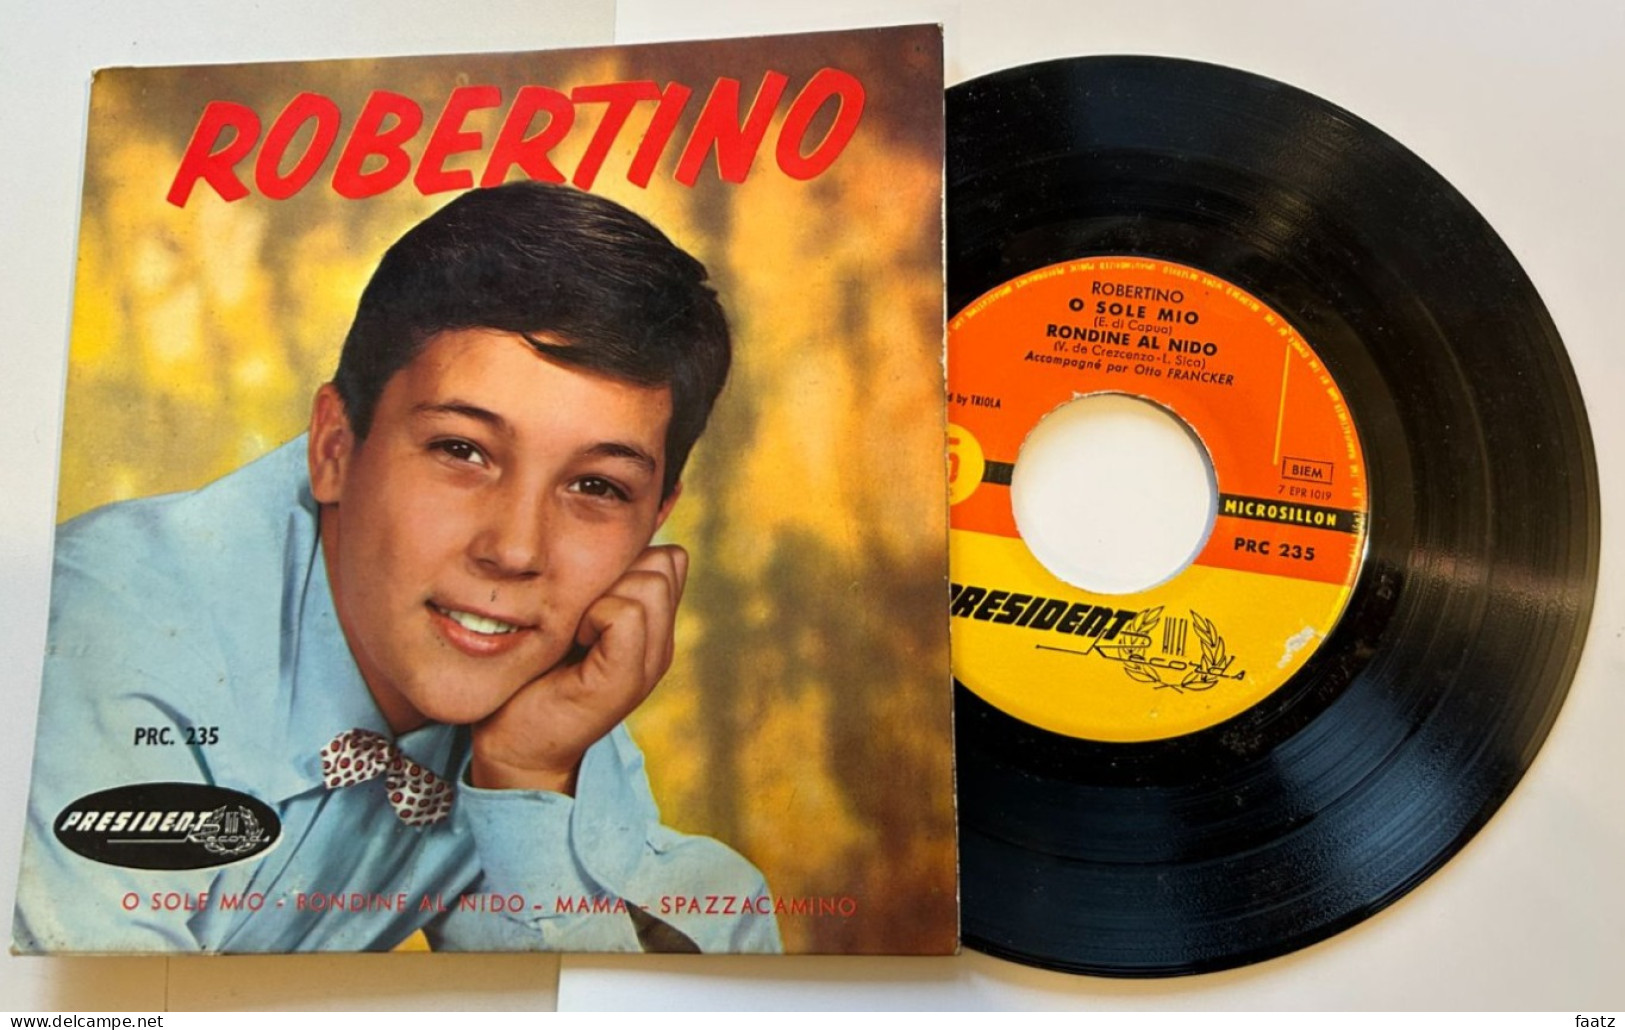 45T Vinyle - Robertino (O Sole Mio, Rondine Al Nido, Mama, Spazzacamino) - Opera / Operette